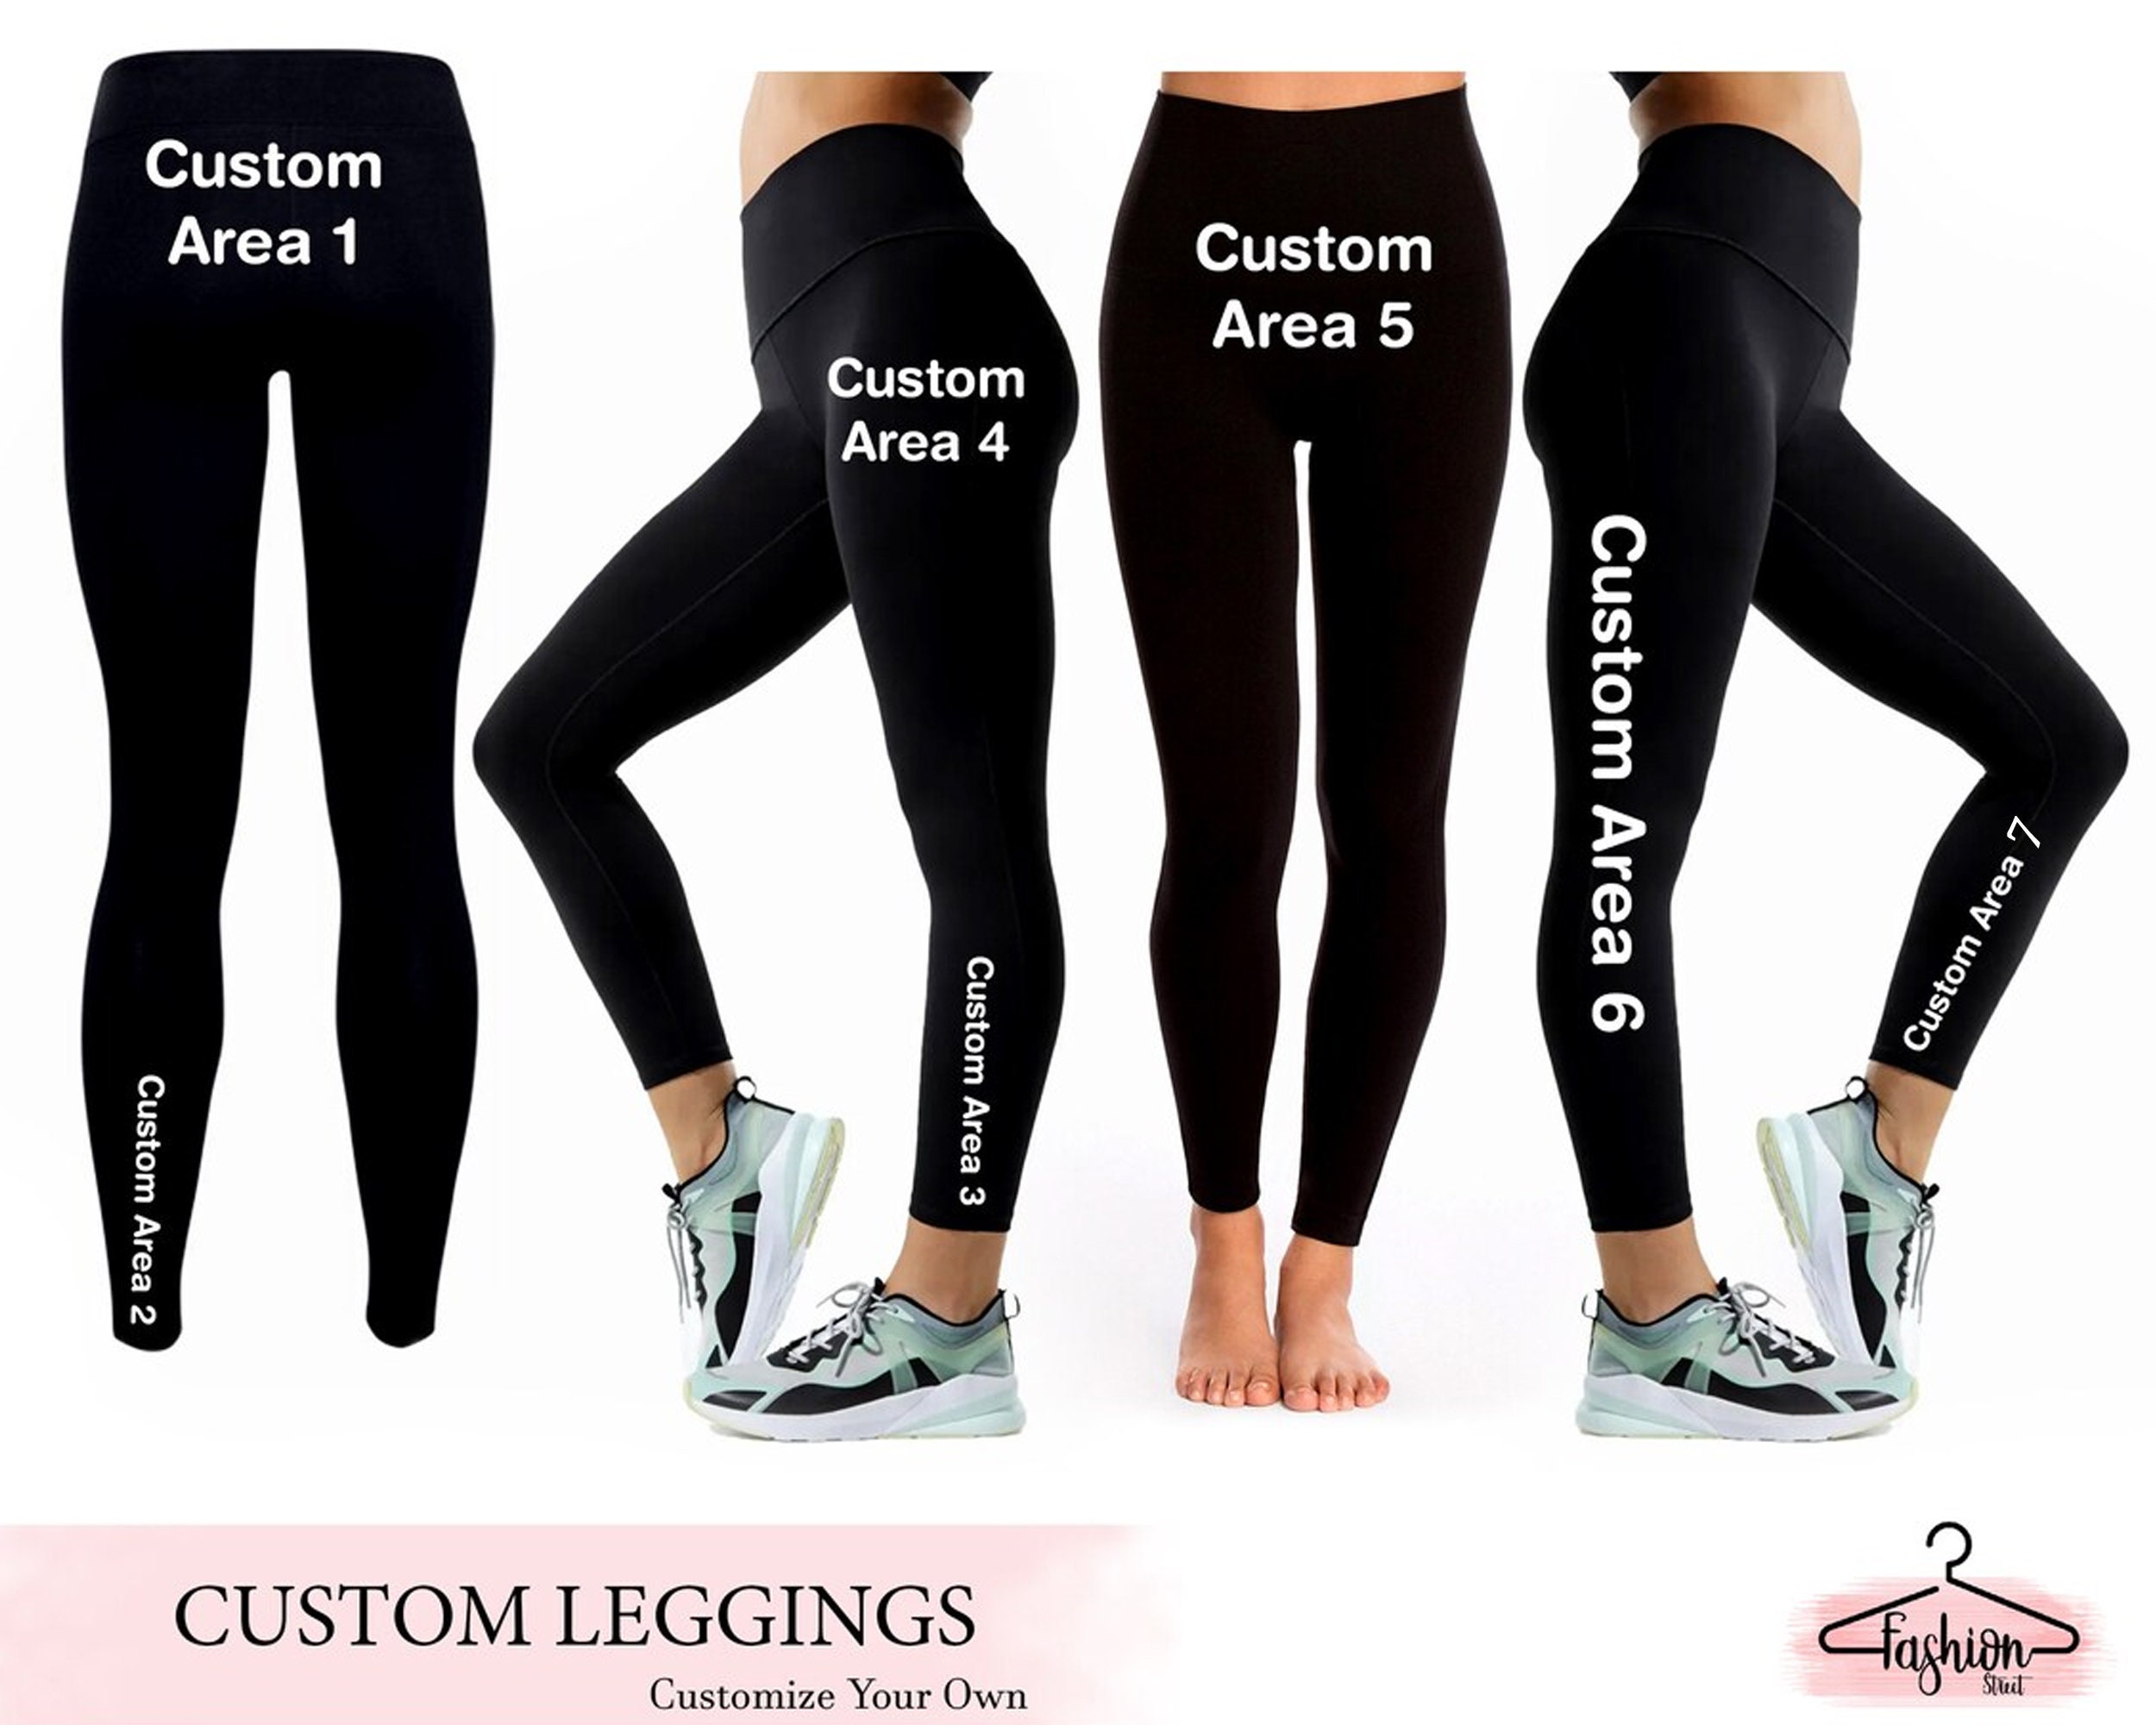 Custom Ladies' three-quarter performance leggings - Customized